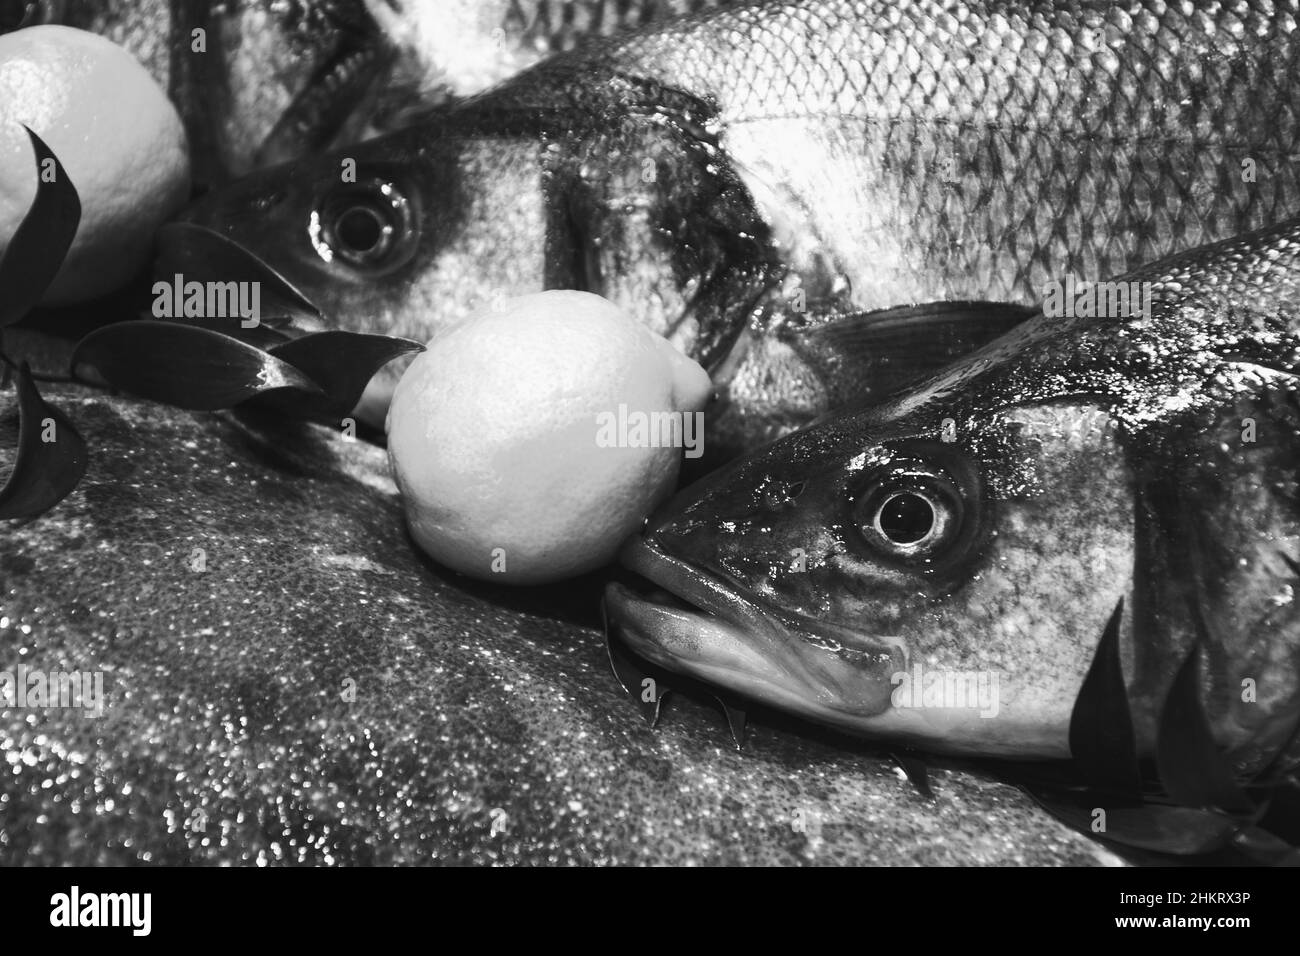 Europäischer Bass und Brill zum Verkauf und Fischmarkt in Frankreich. Fische haben wichtige Nährstoffe wie Eiweiß, Vitamin D und Omega-3. Schwarzweißfoto Stockfoto